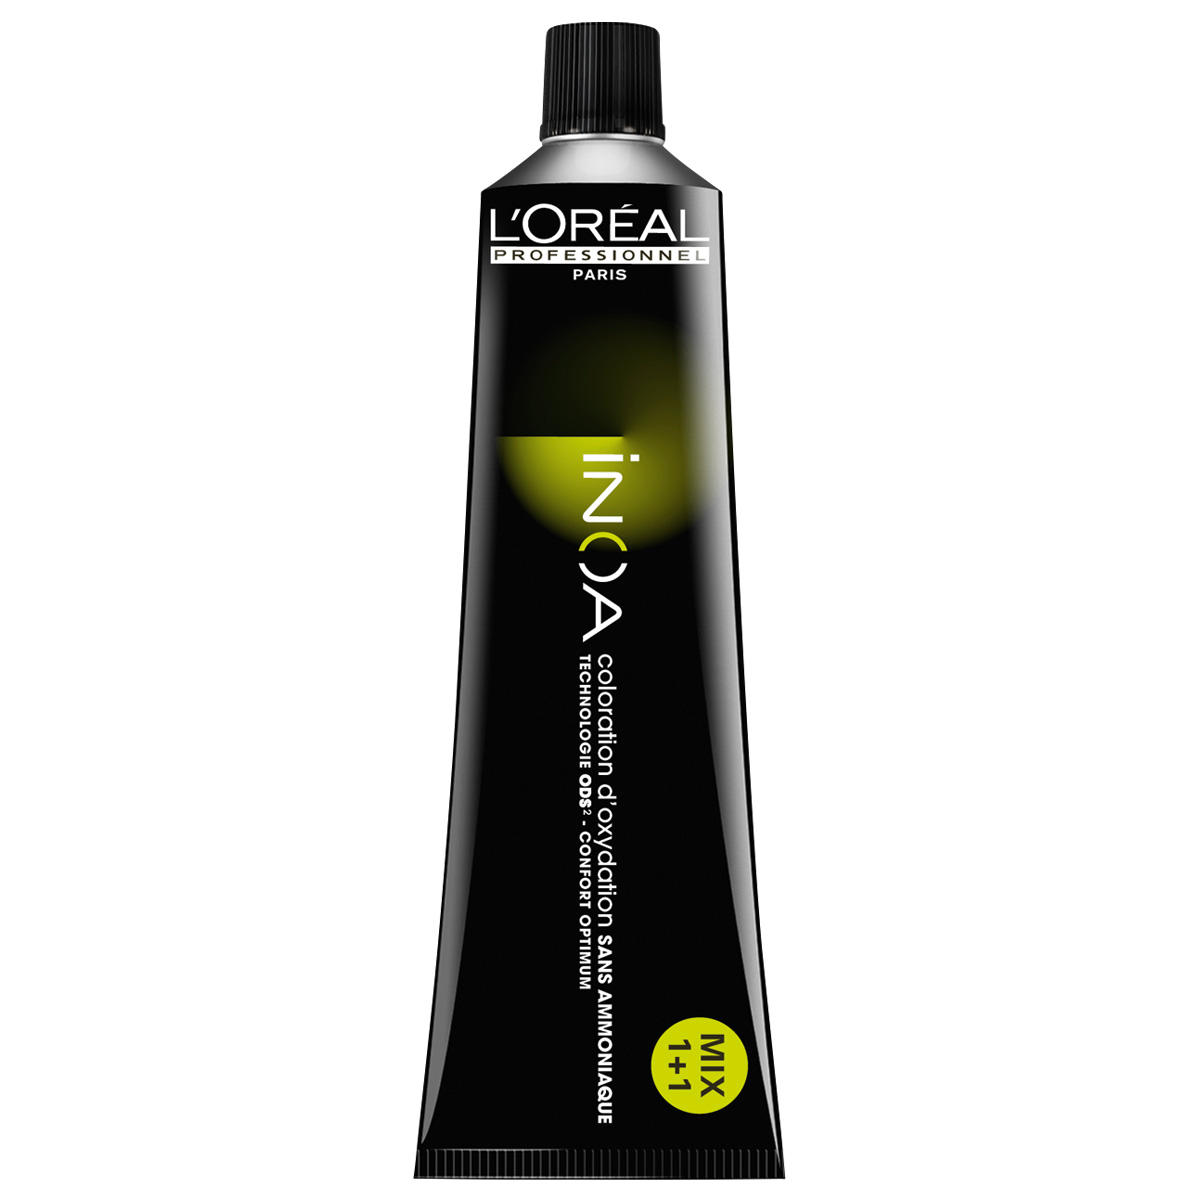 L'Oréal Professionnel Paris Coloration Trasparente, tubo 60 ml